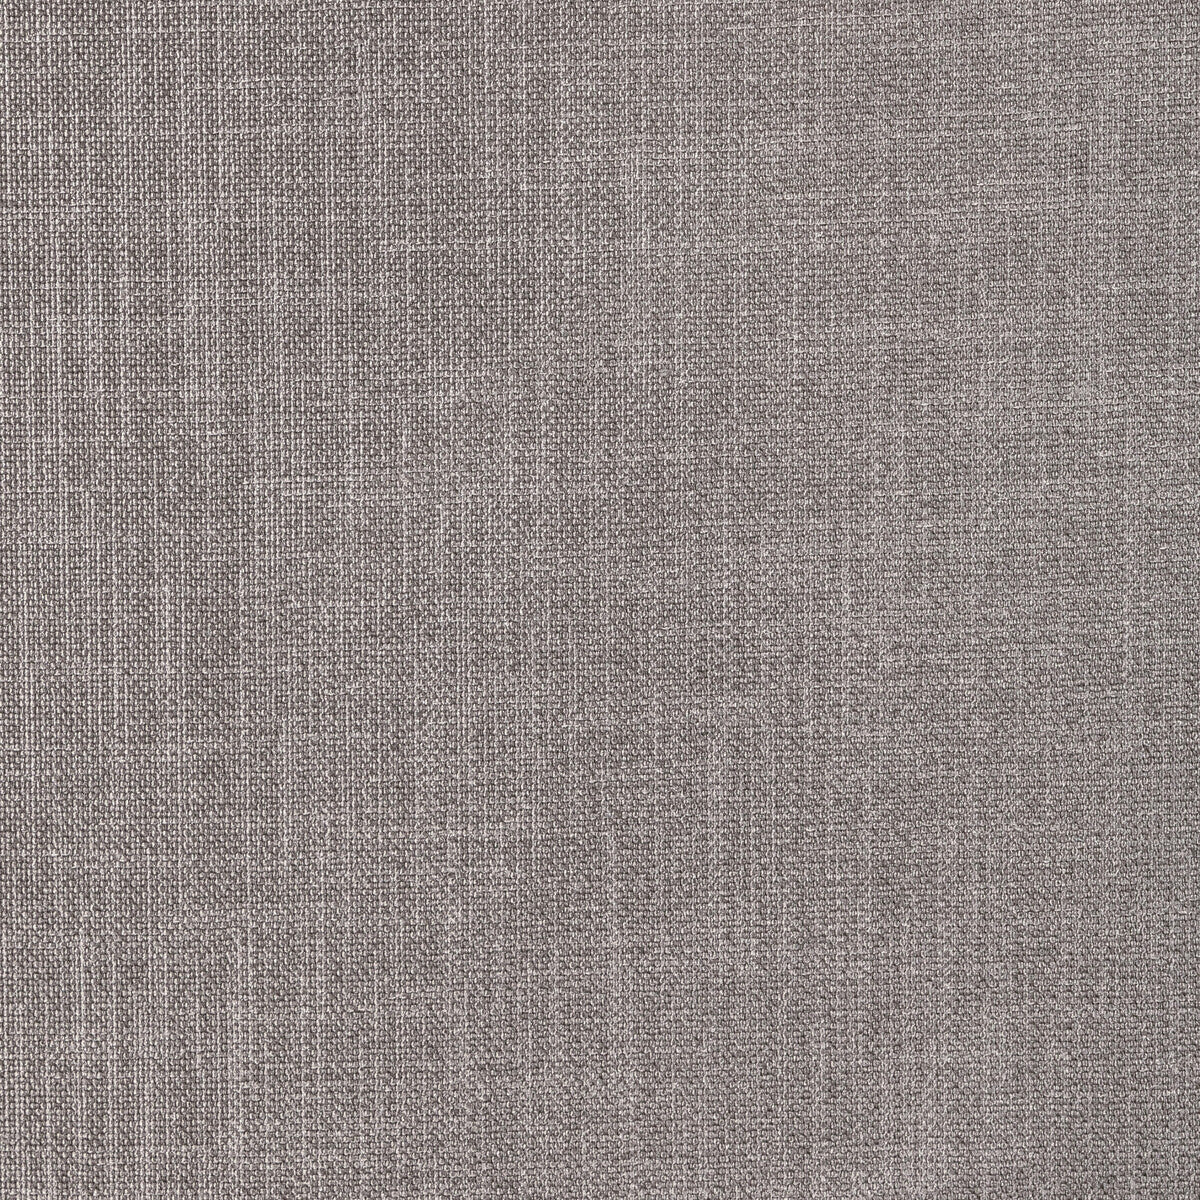 Kravet Basics fabric in 33120-1621 color - pattern 33120.1621.0 - by Kravet Basics